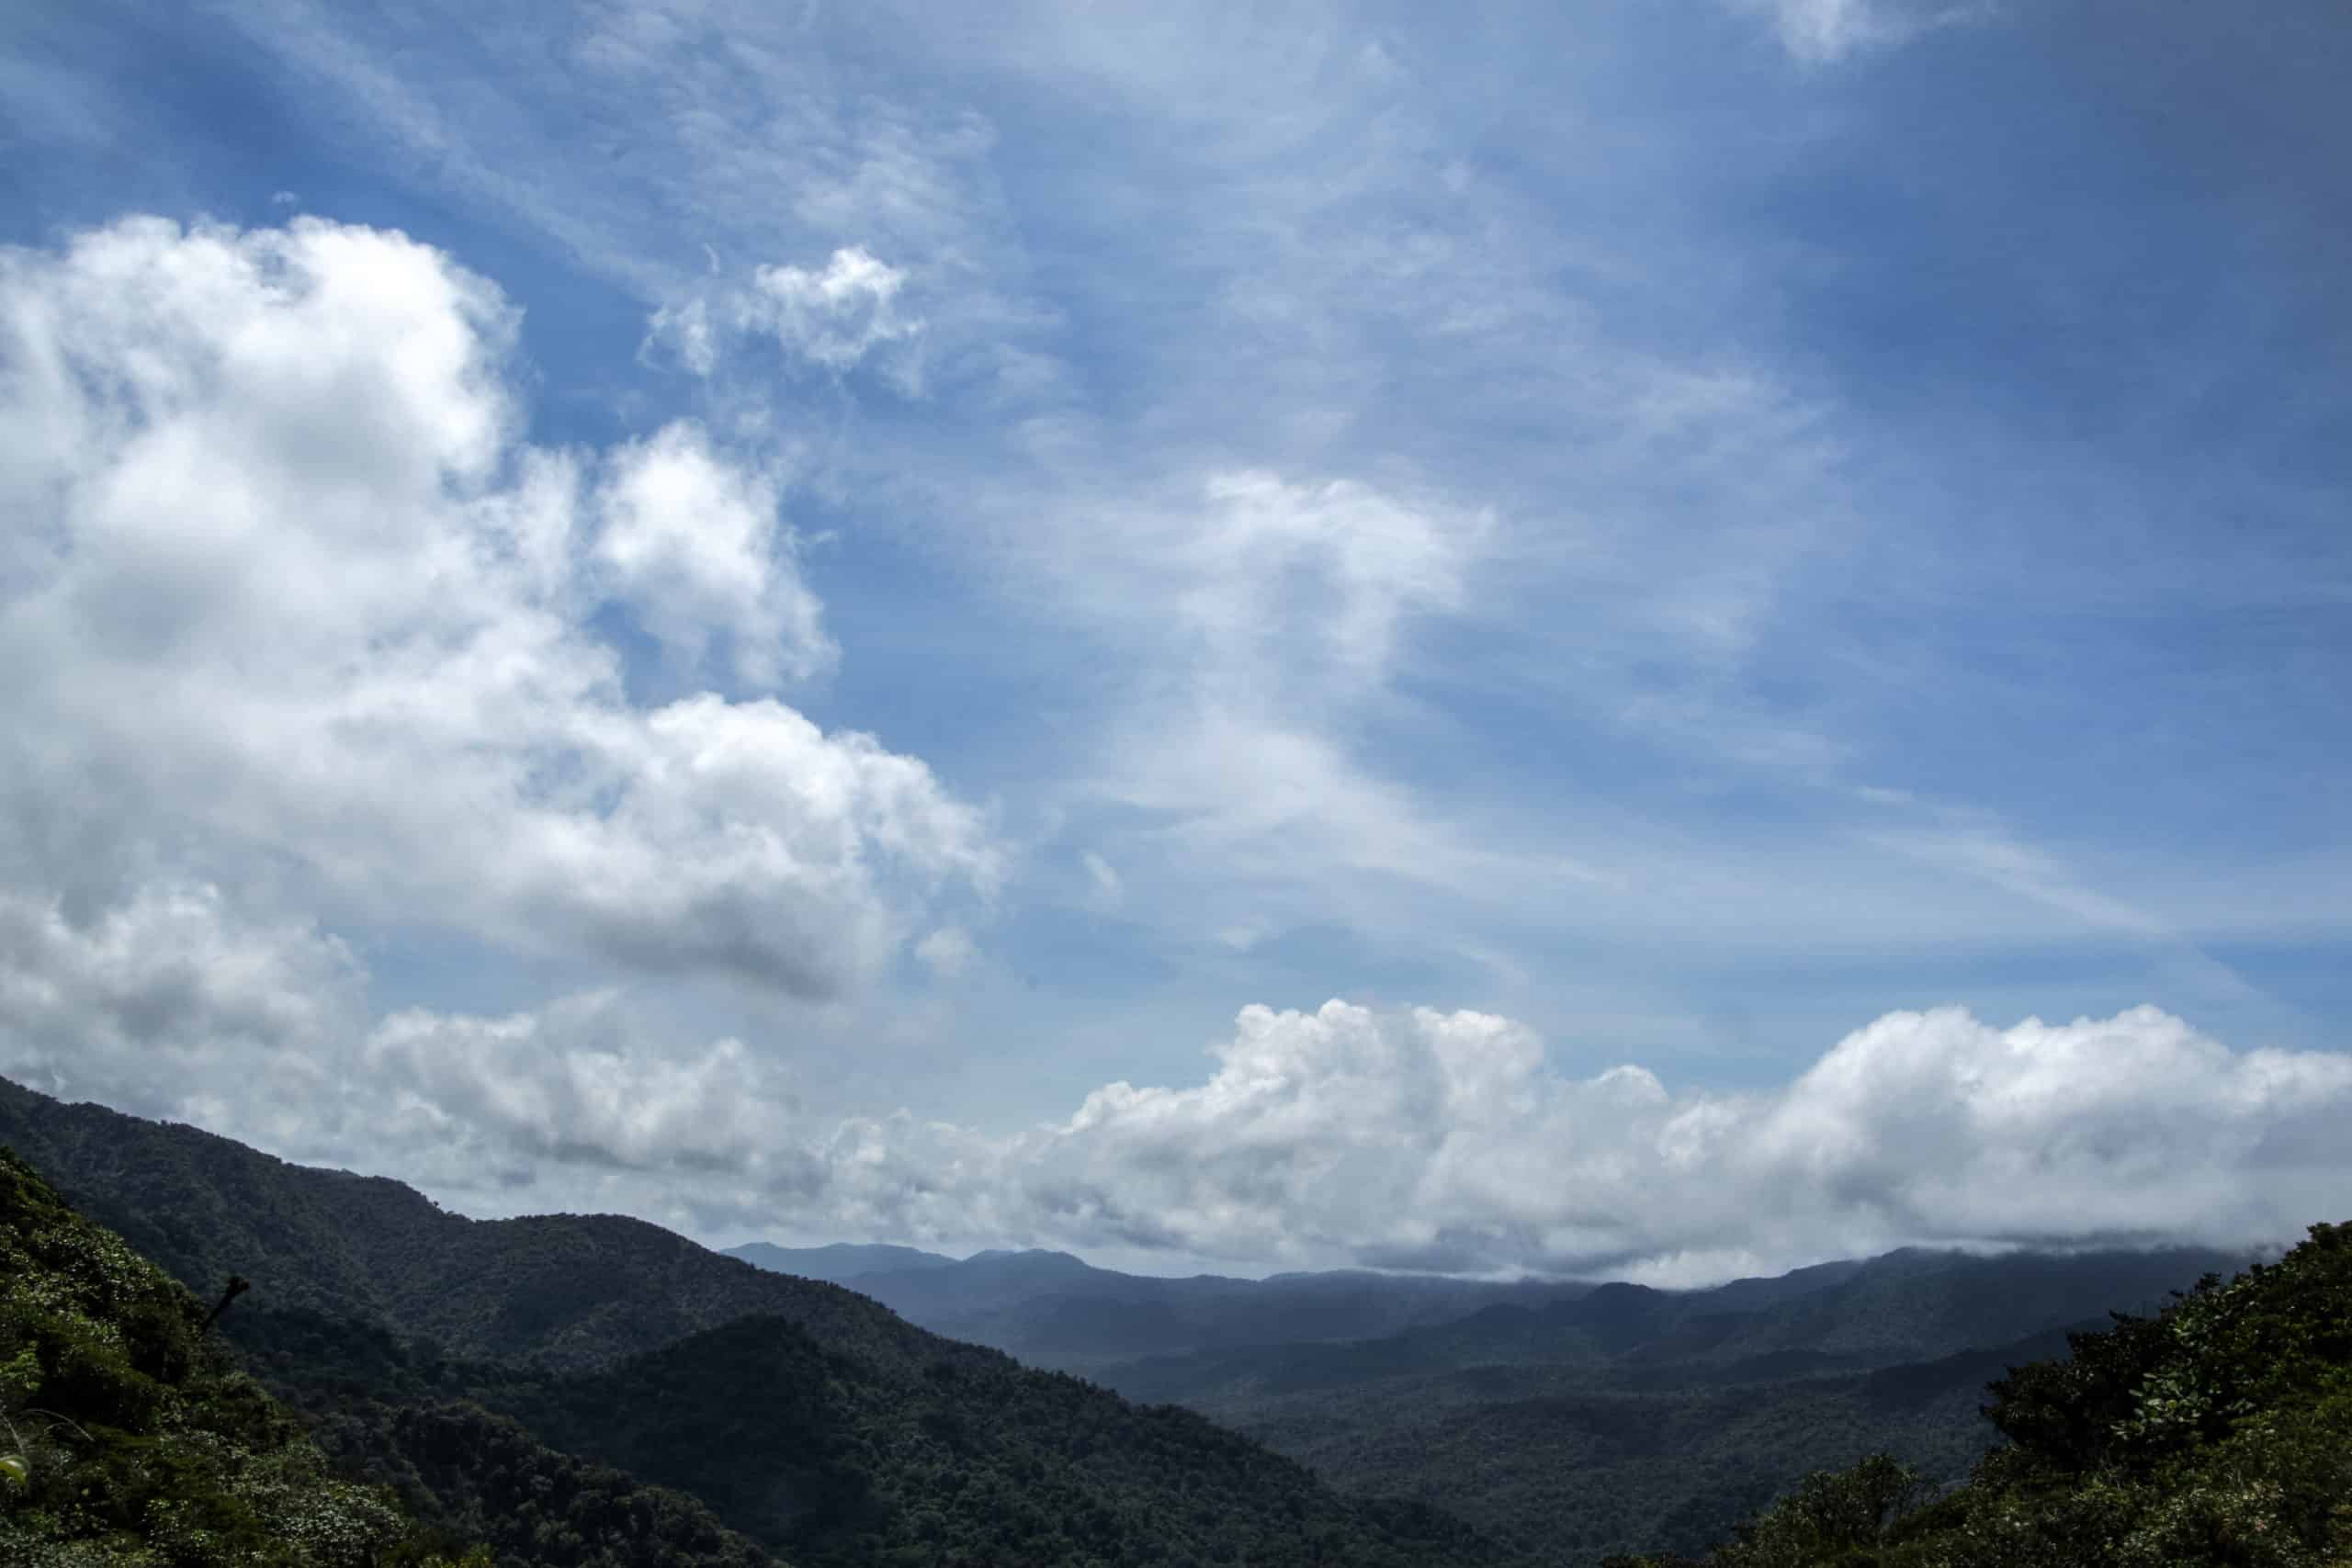 Inicia el periodo canicular en Costa Rica: ¿Qué impacto tendrá en las lluvias?